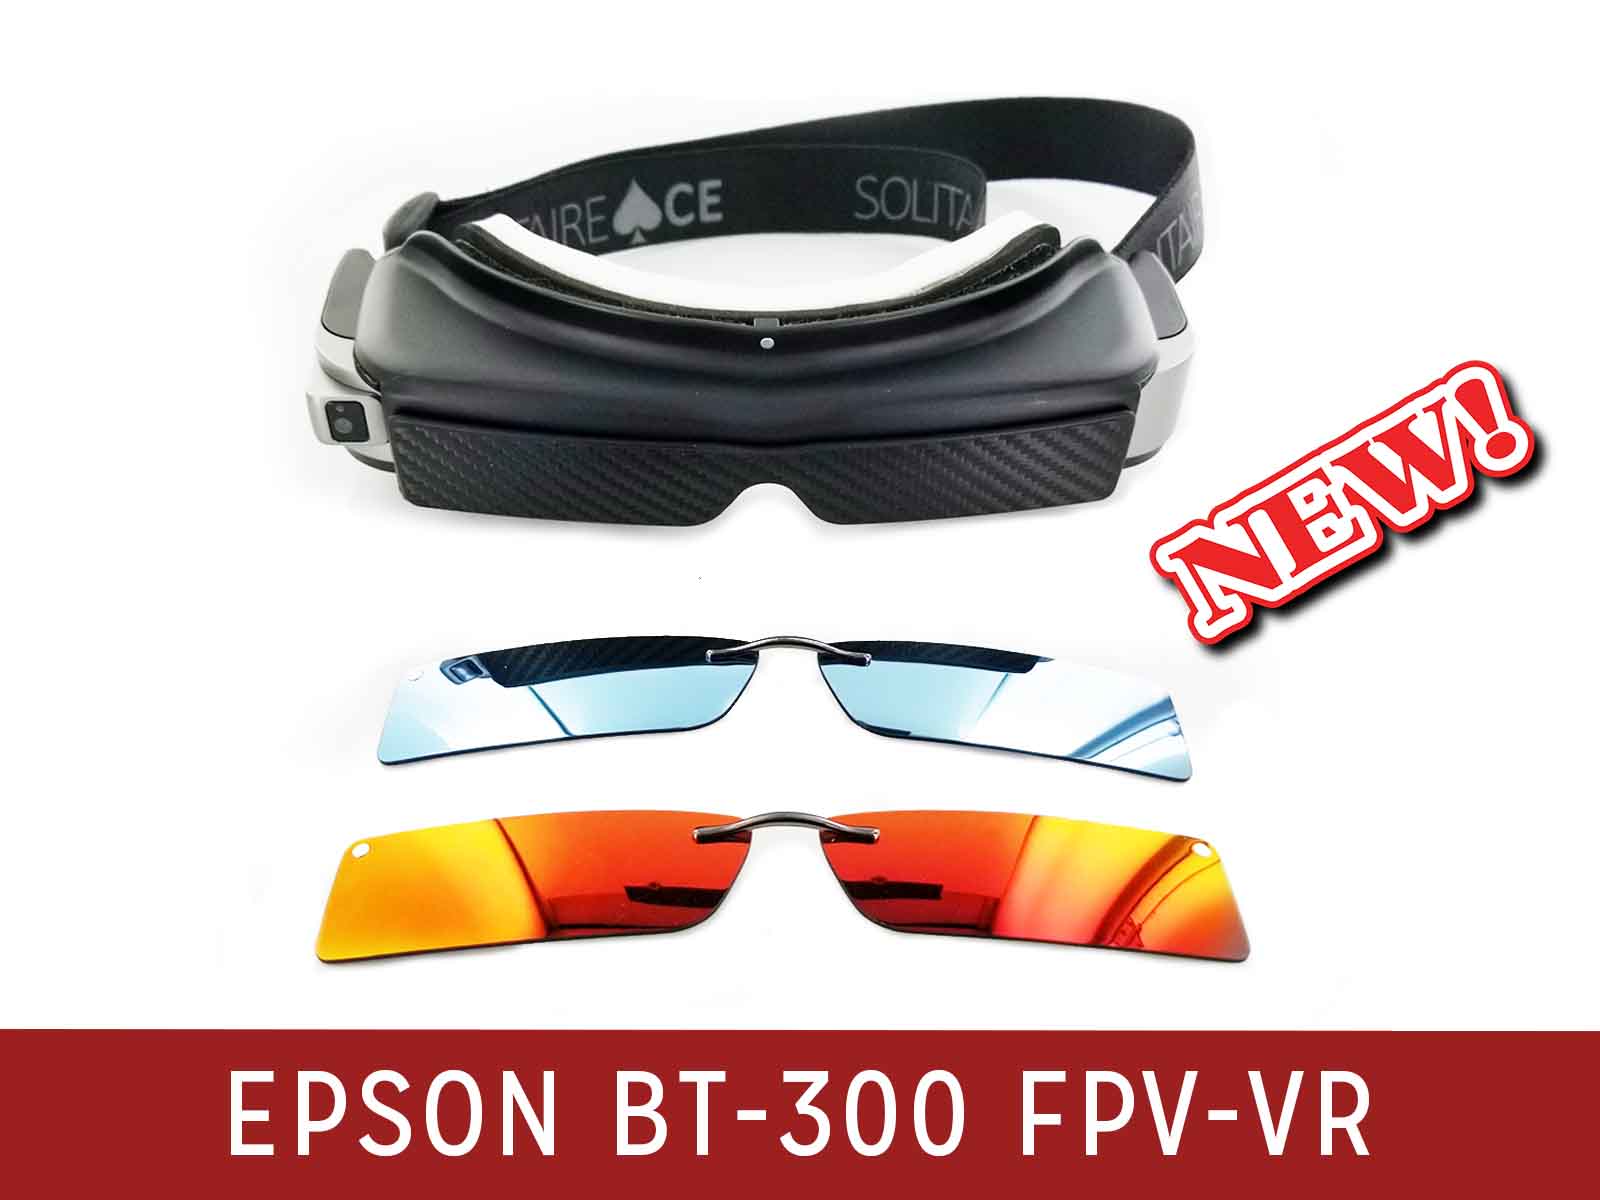 テレビ/映像機器 その他 Epson Moverio BT-300 Solitare Ace FPV-VR Combo